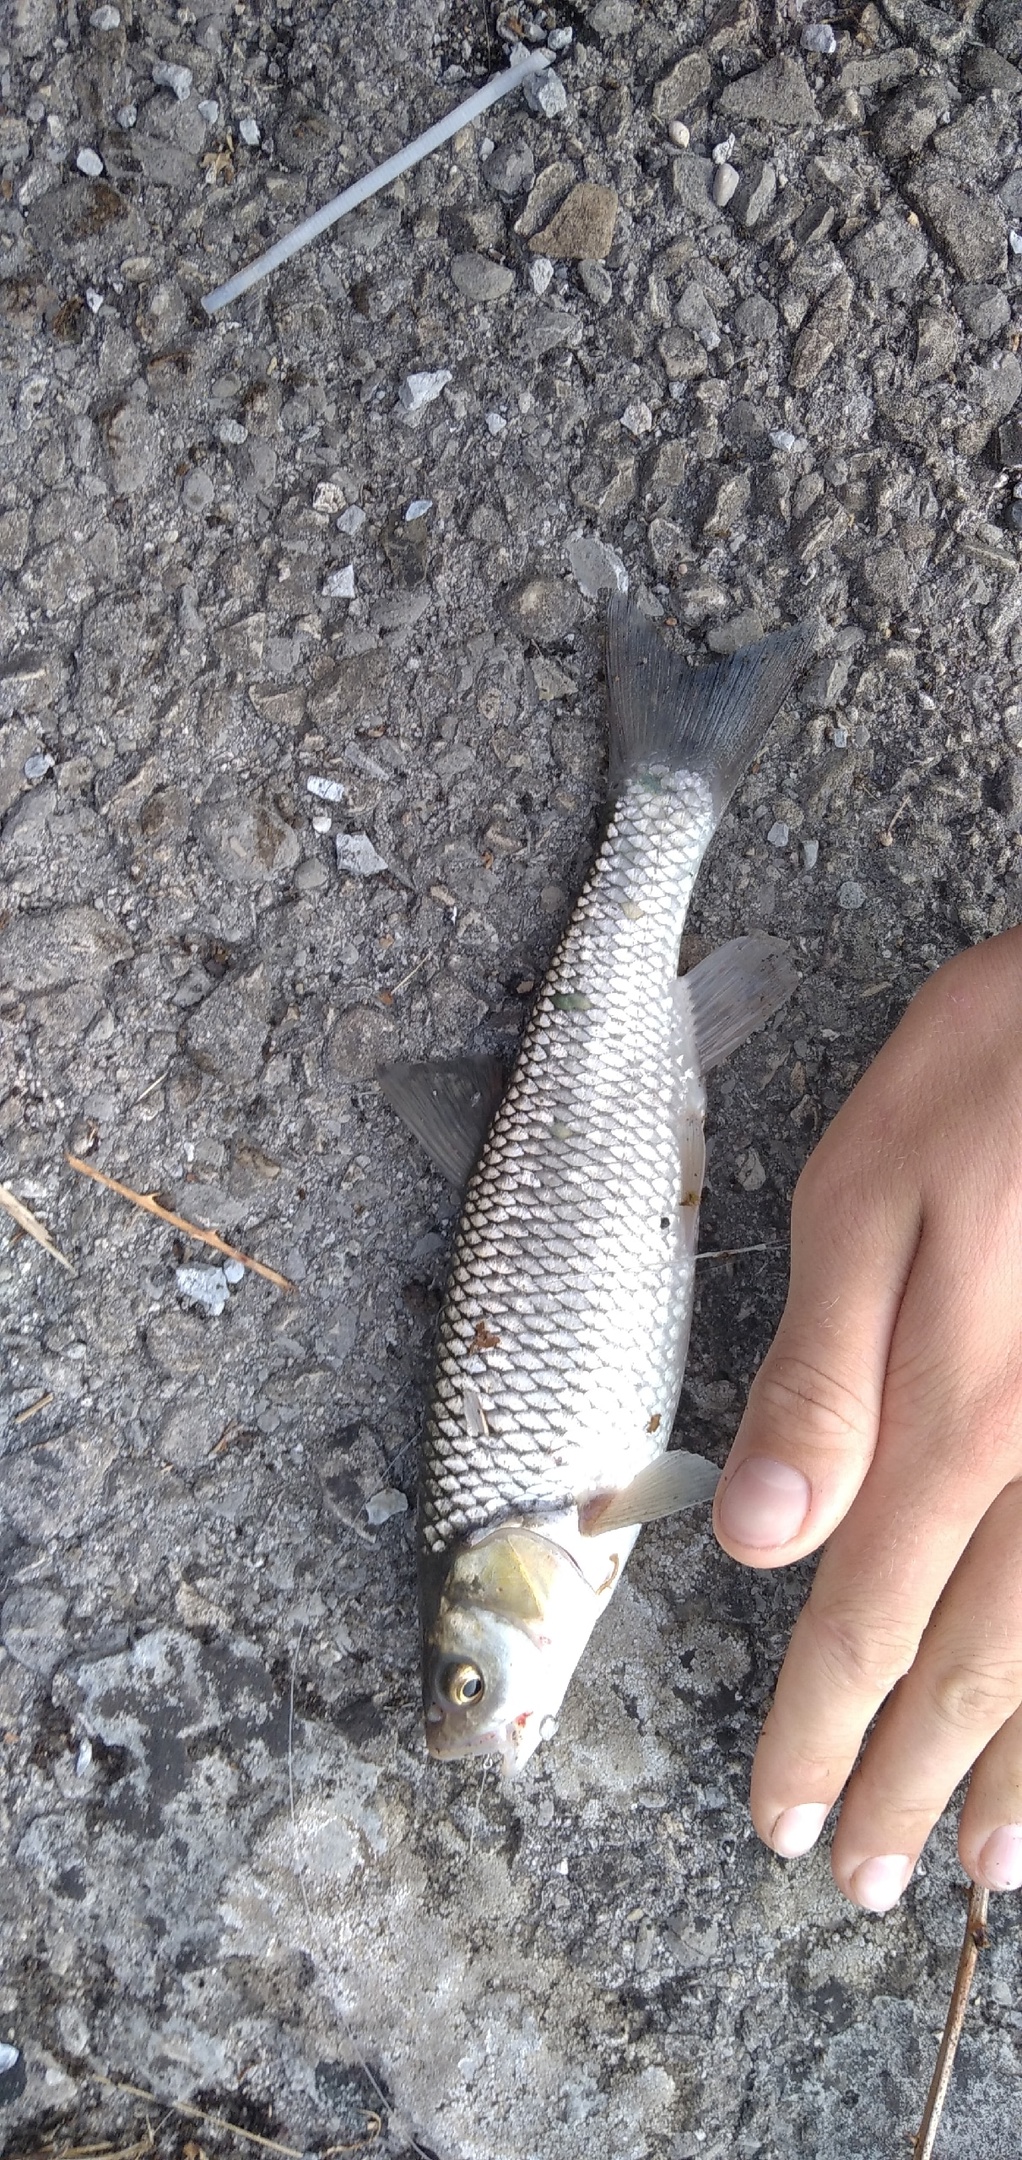 Дмитрий из «Абхазия» просит распознать рыбу по фото